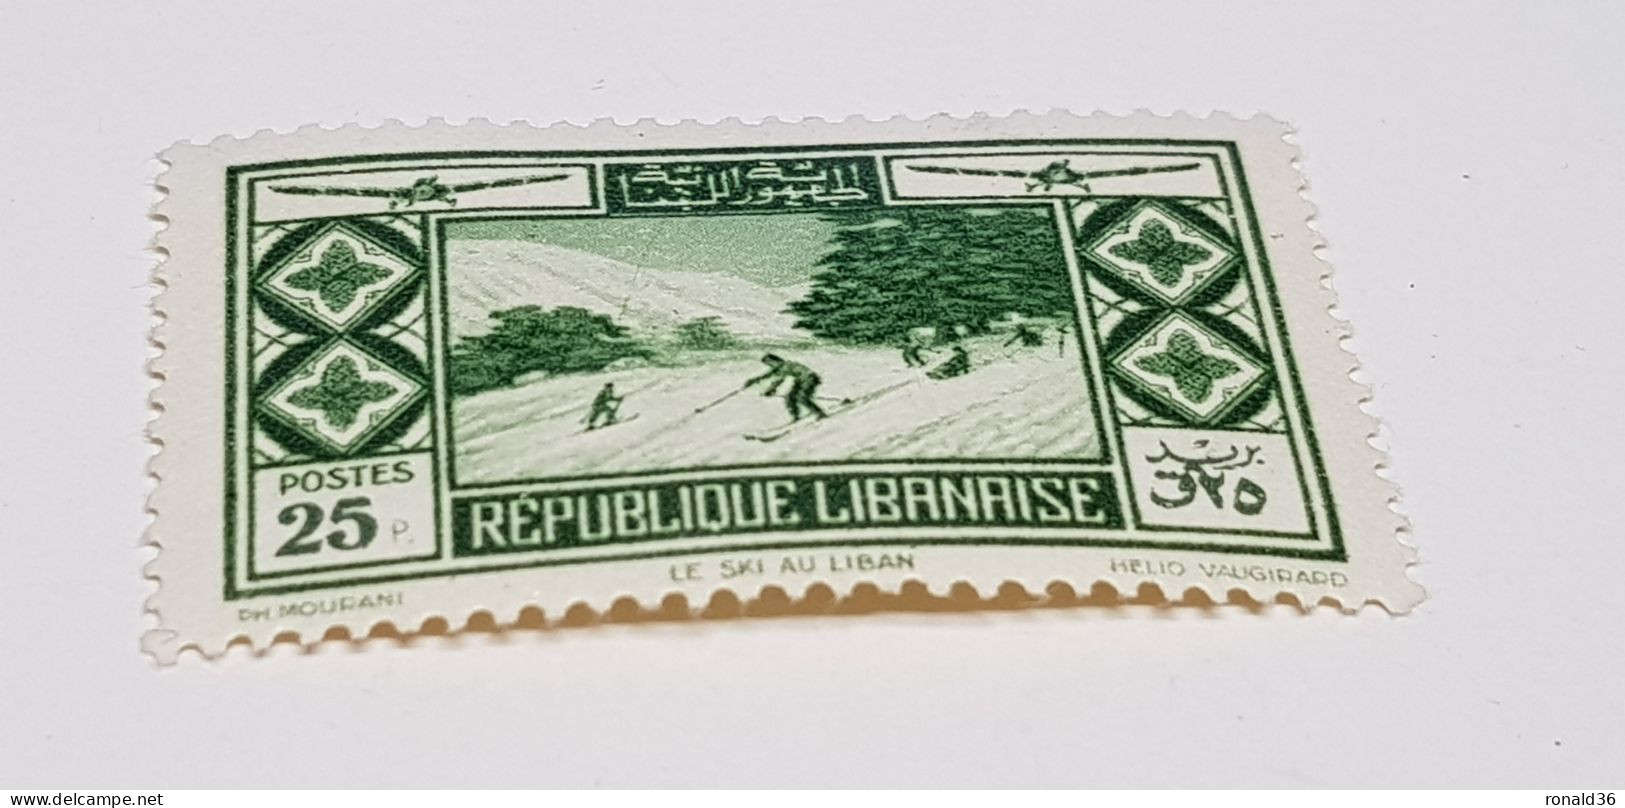 GRAND LIBAN N 56 Poste Aérienne 25 P Vert FRANCE Timbre Francais Ex Colonie Française Protectorat - Neufs